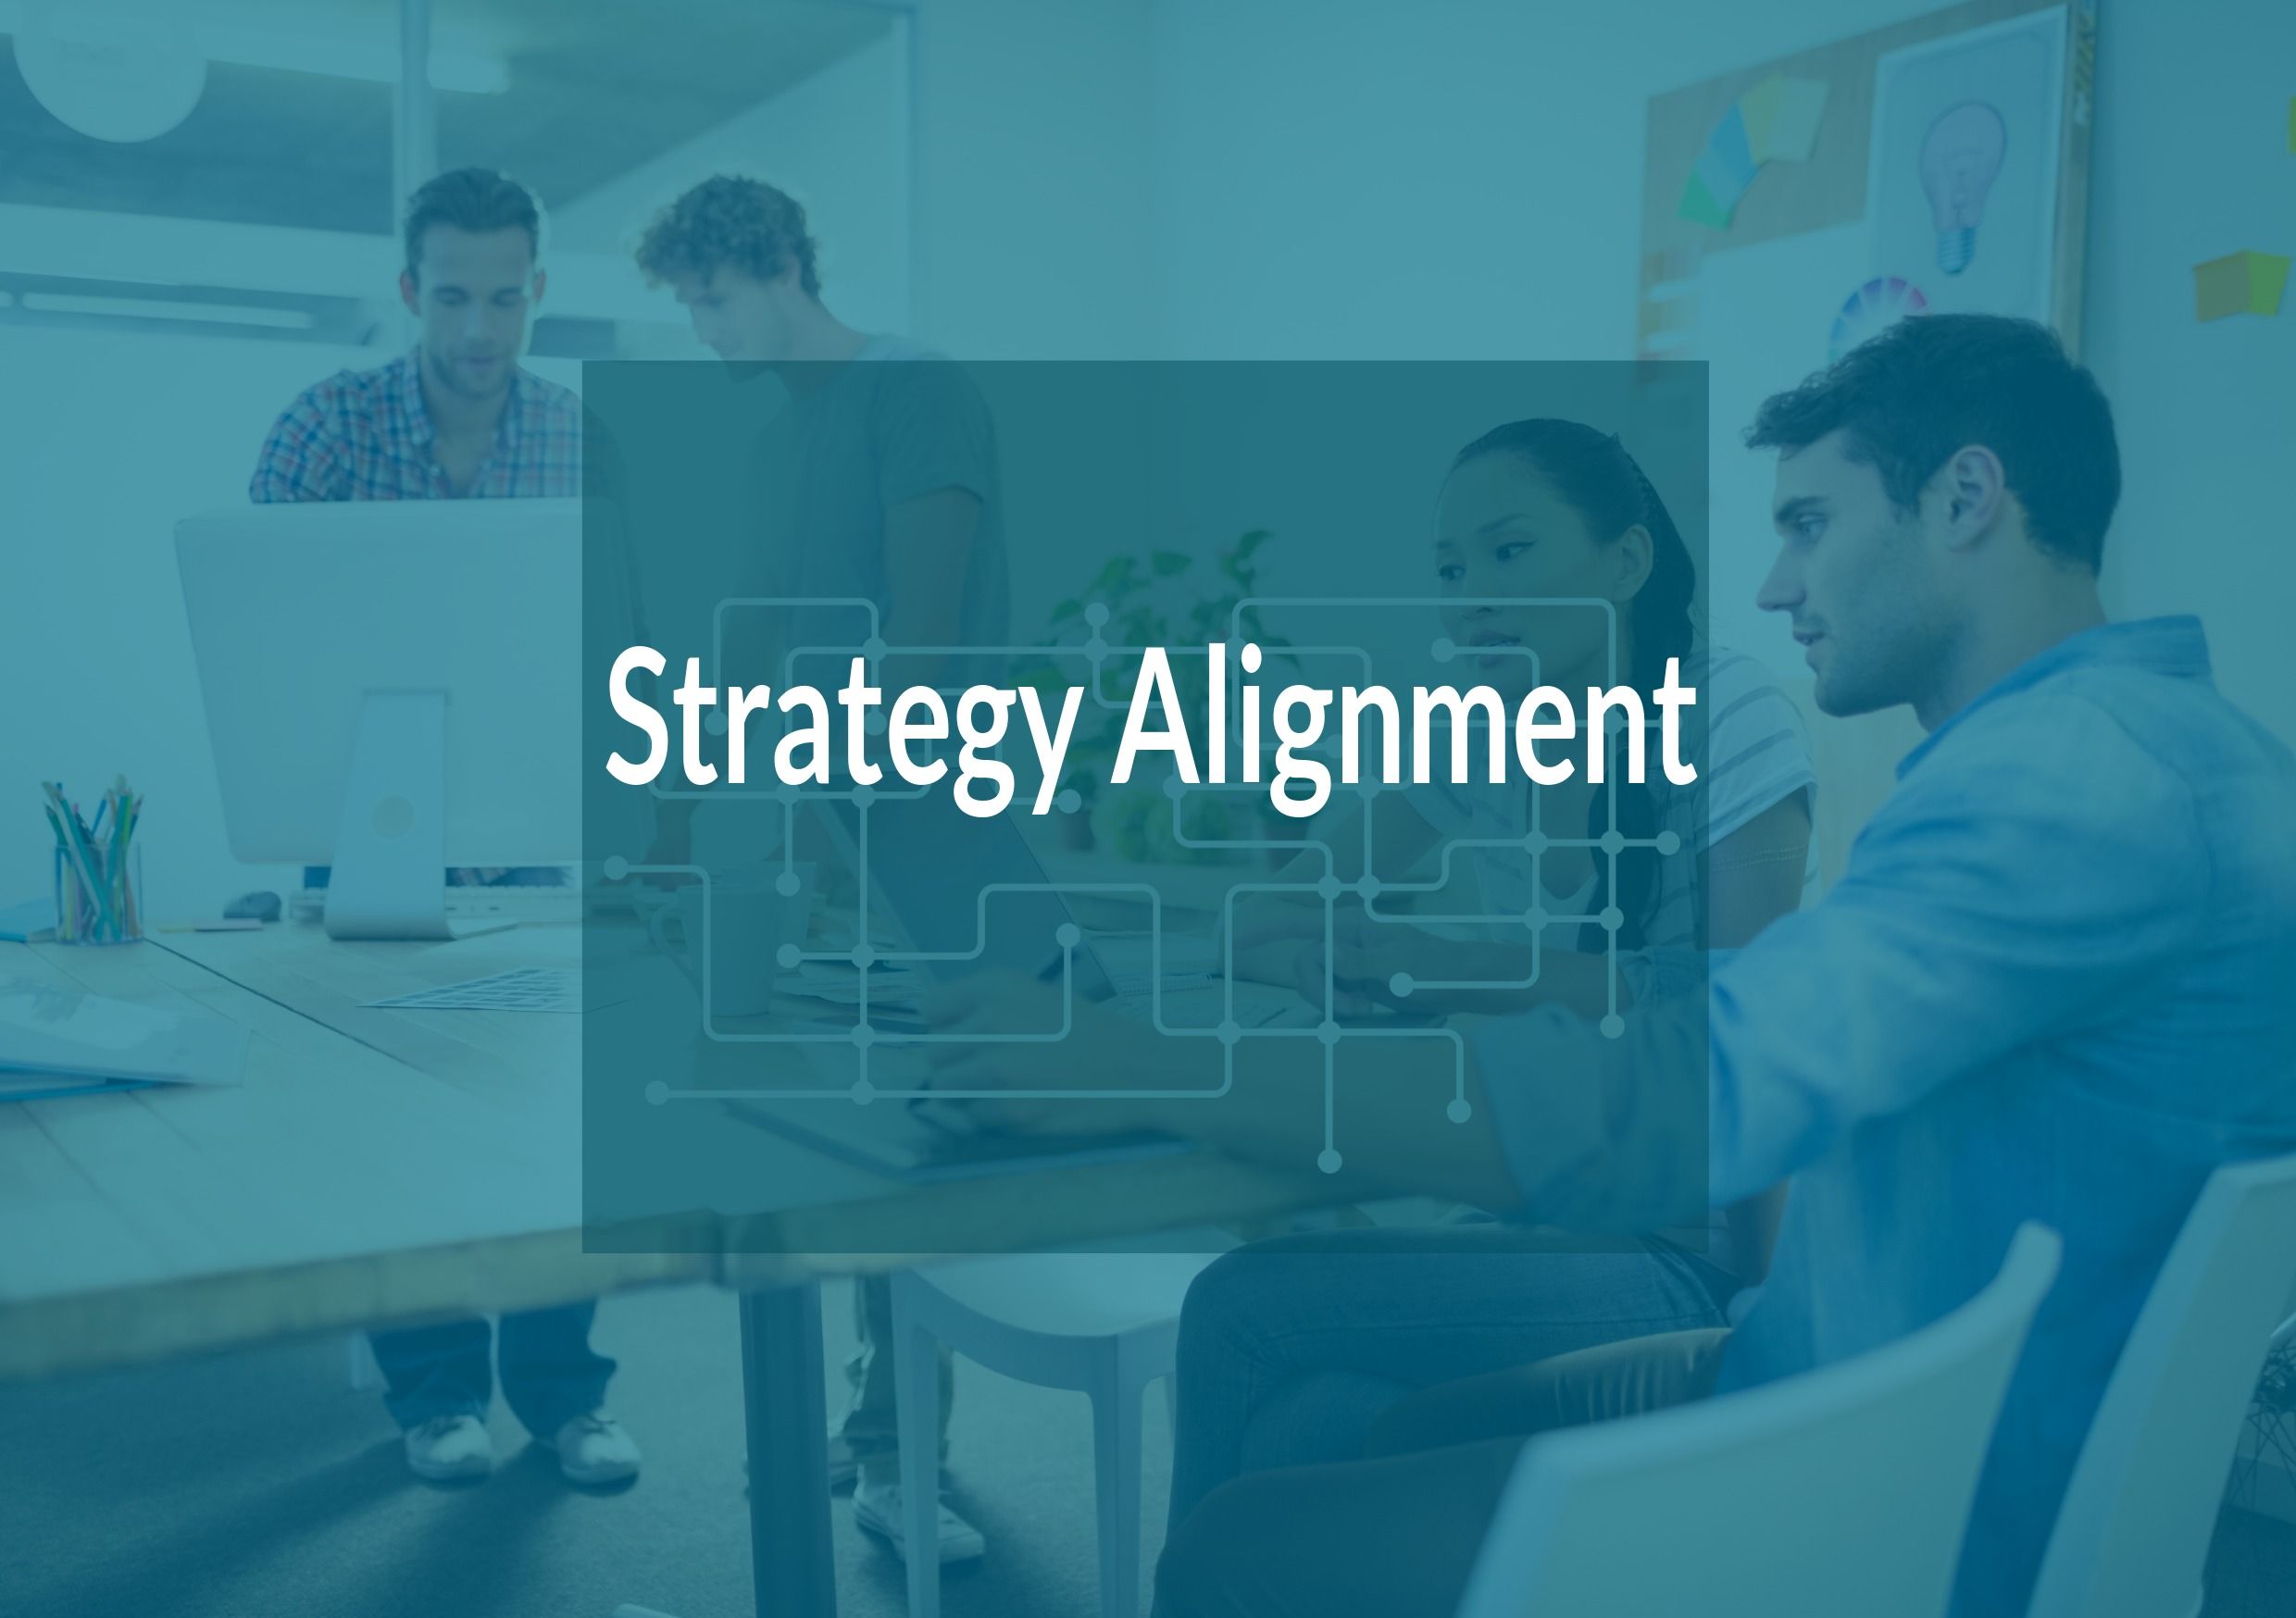 Alinhamento de estratégia de texto em branco sobre uma imagem de fundo de uma reunião de negócios com uma tonalidade verde